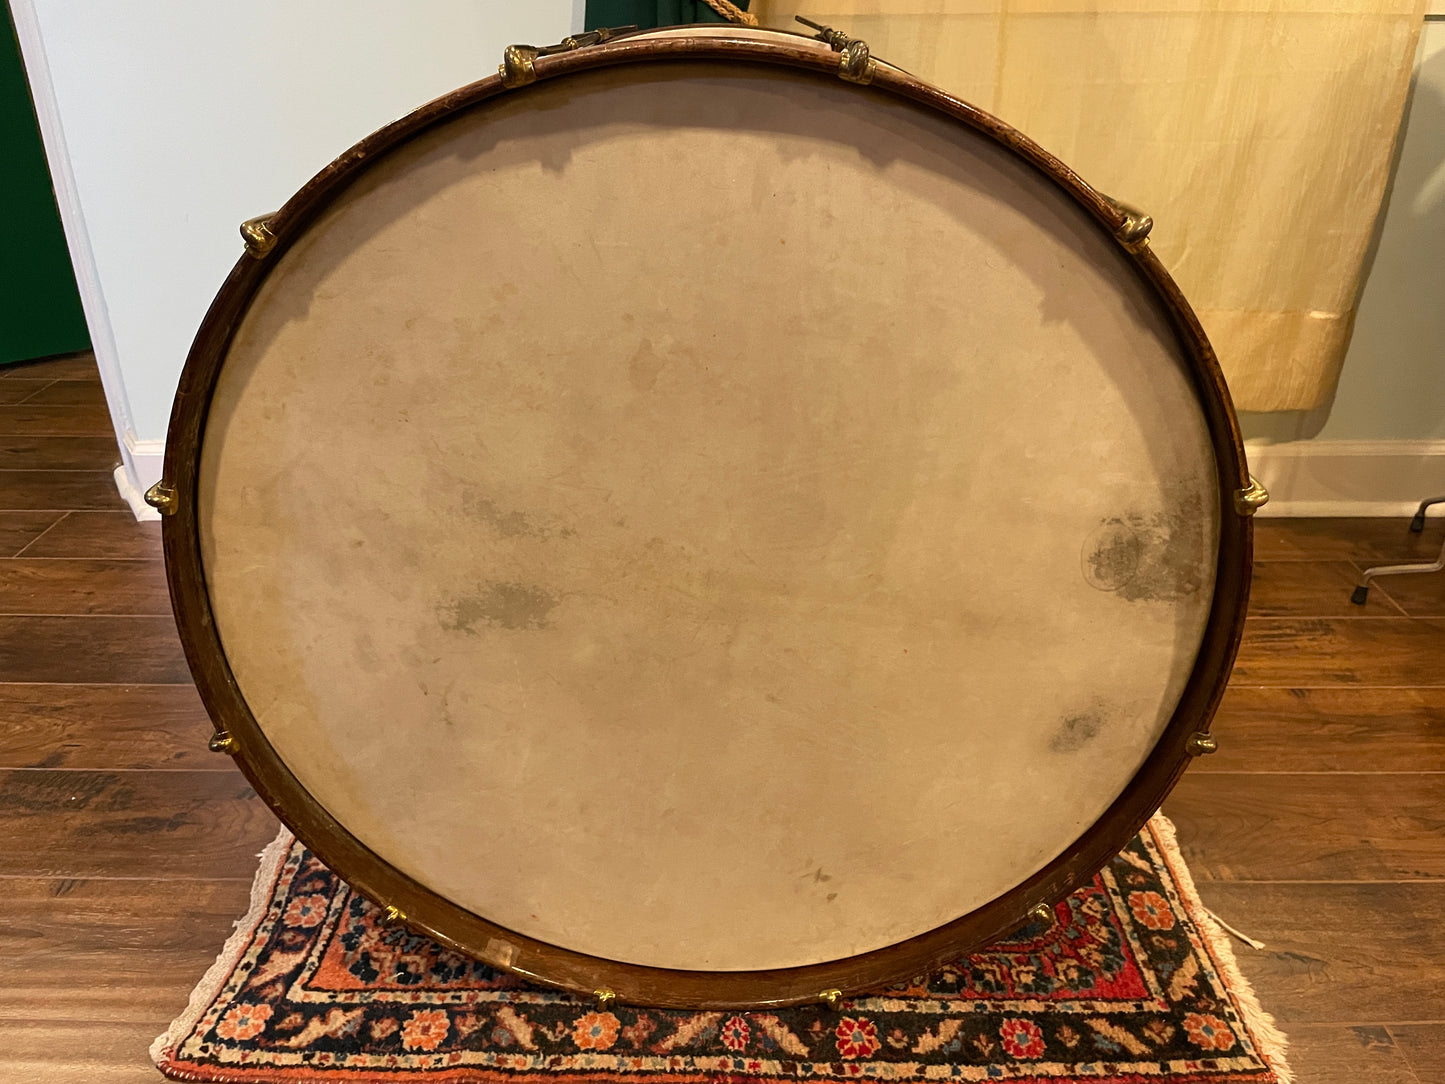 1920s Leedy 14x28 Spartan Concert Bass Drum Natural